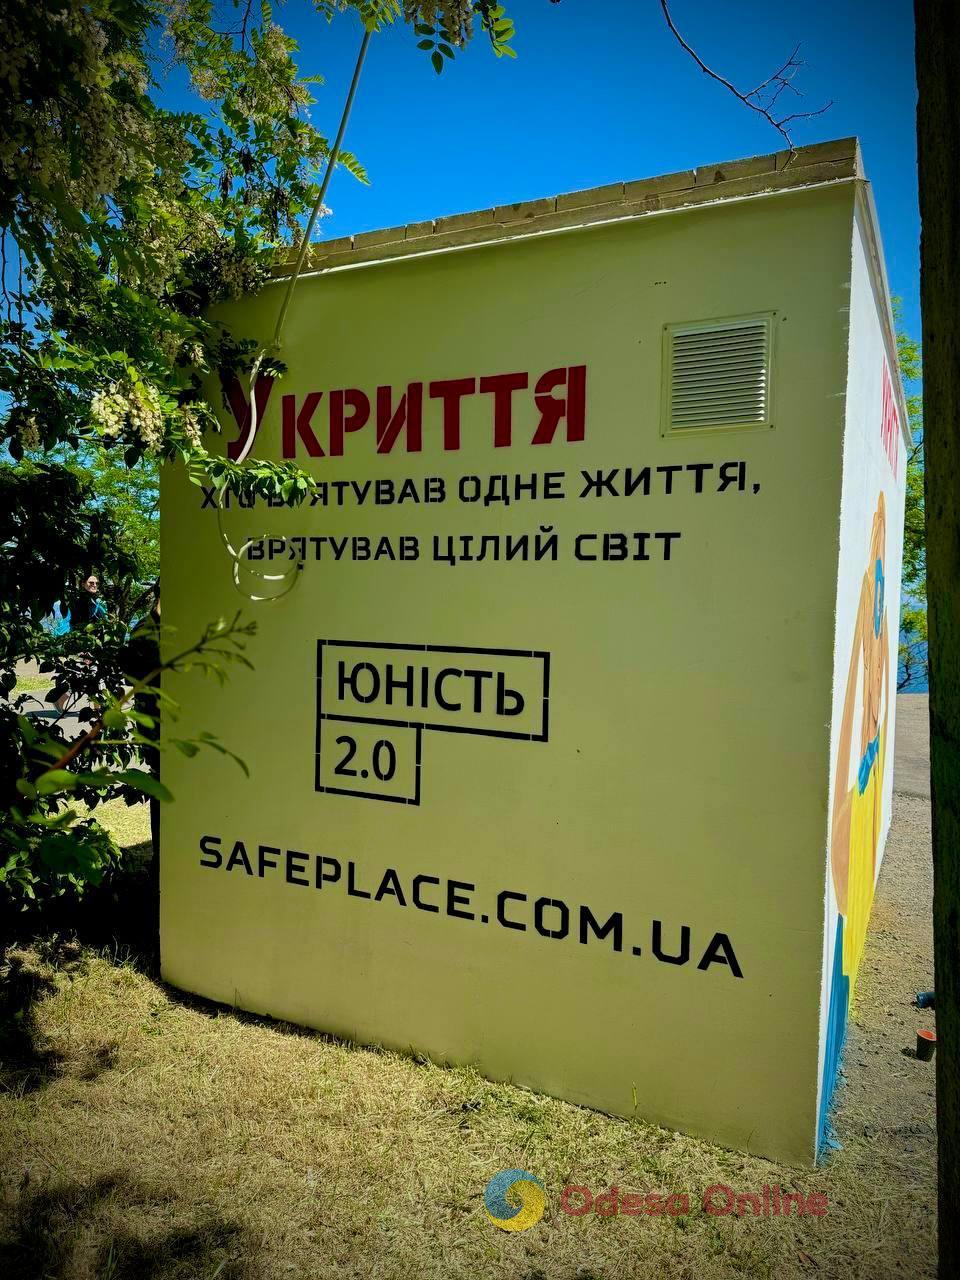 Одесса: мобильное укрытие с системой автоматического открывания дверей установили на склонах парка «Юность»